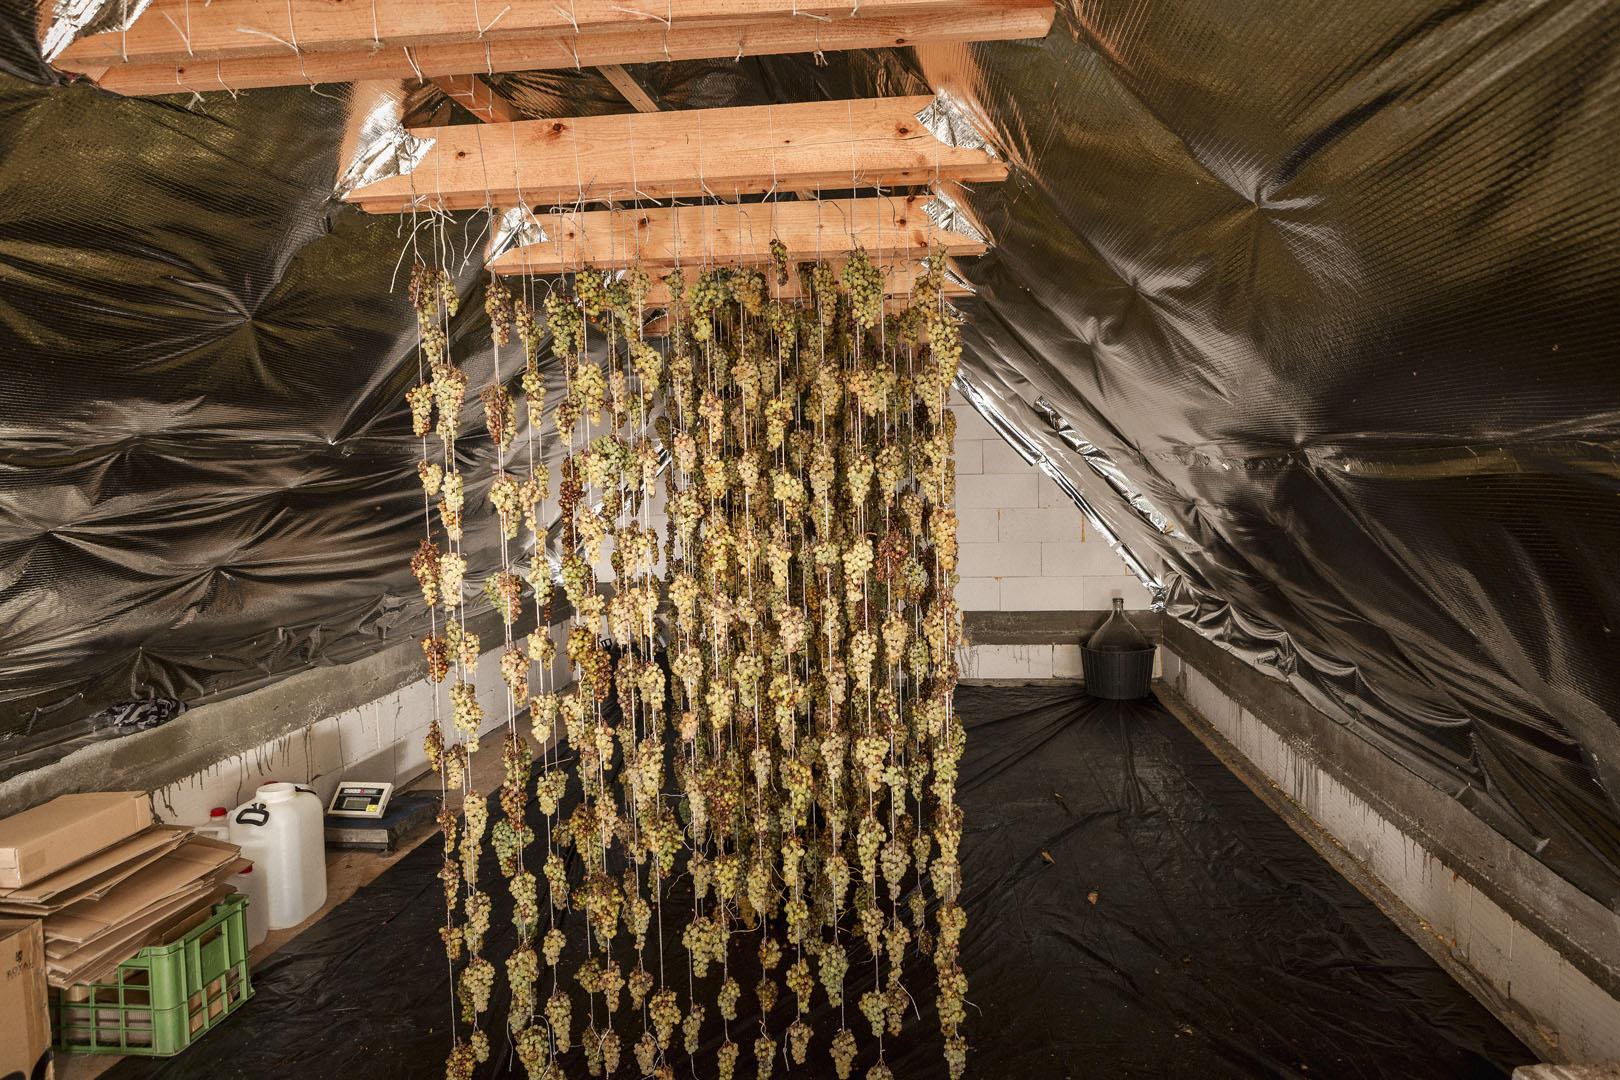  Z trámov strechy rodinného domu Juraja Klimka visia v prievane motúzy so stovkami strapcov. Popri ukladaní na slamové rohože či tŕstie je to ďalší spôsob, ako aspoň tri mesiace sušiť hrozno vhodné na výrobu slamového vína.